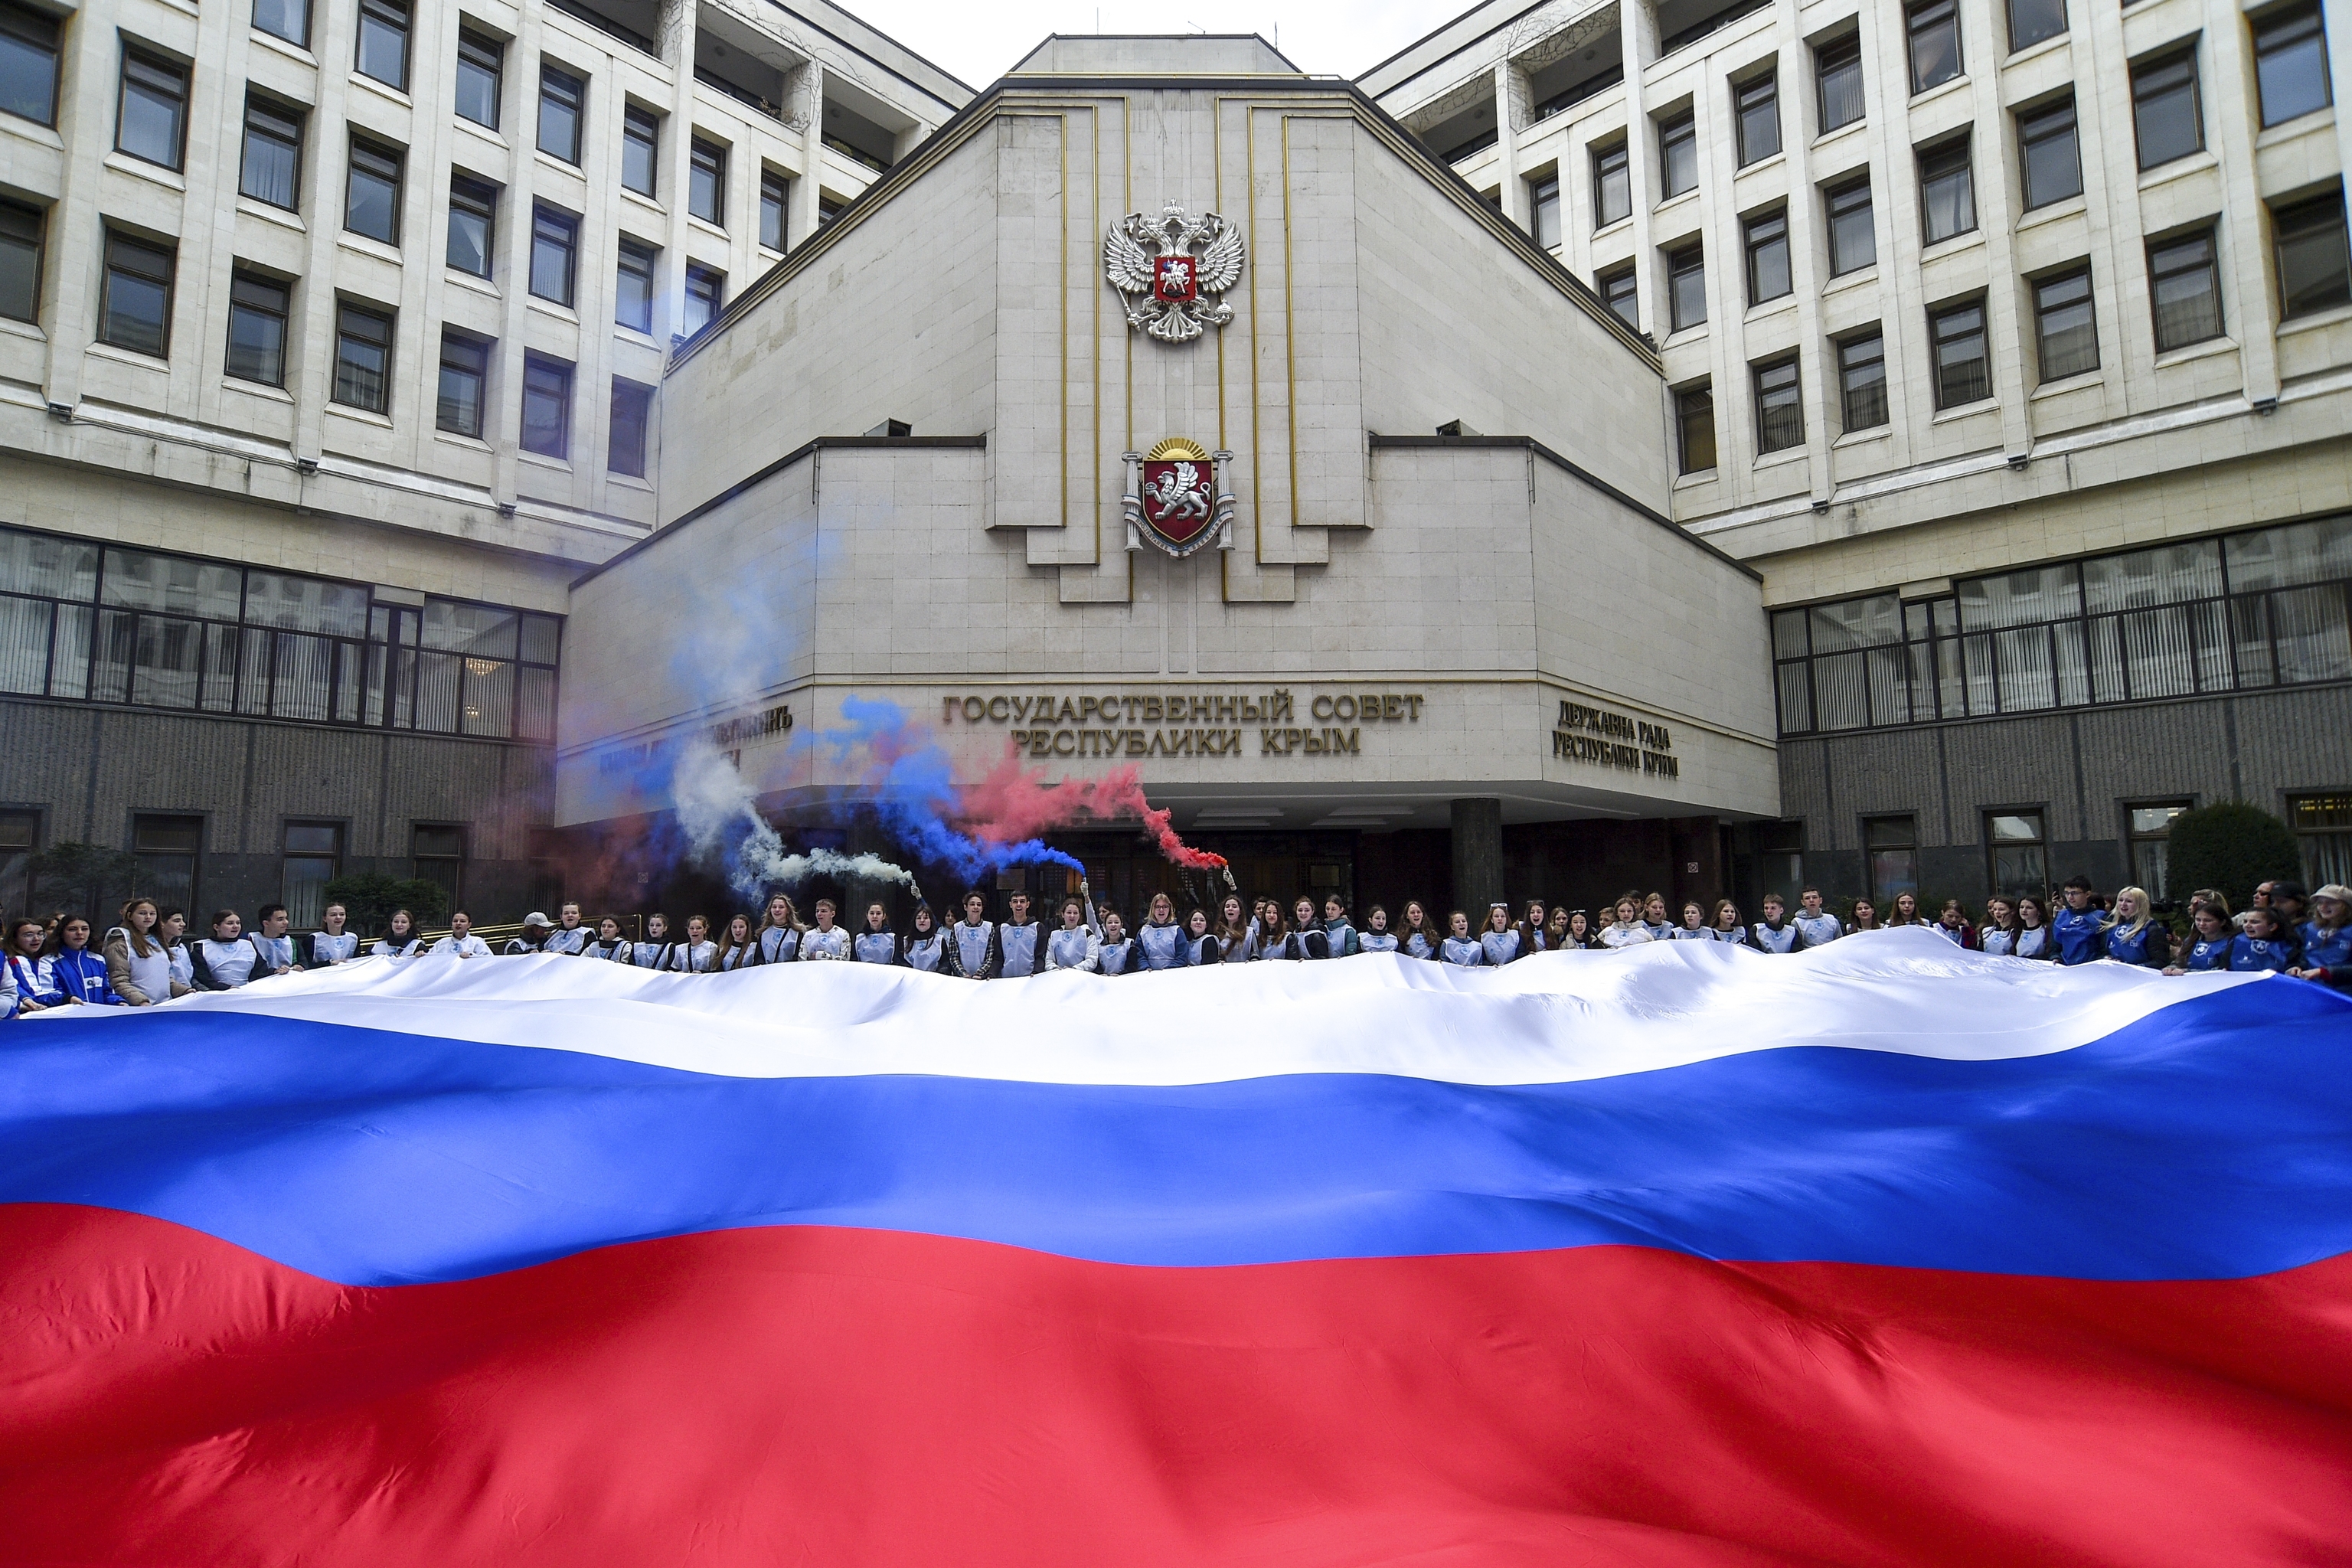 Despliegue de una bandera nacional rusa frente al Parlamento de Crimea.